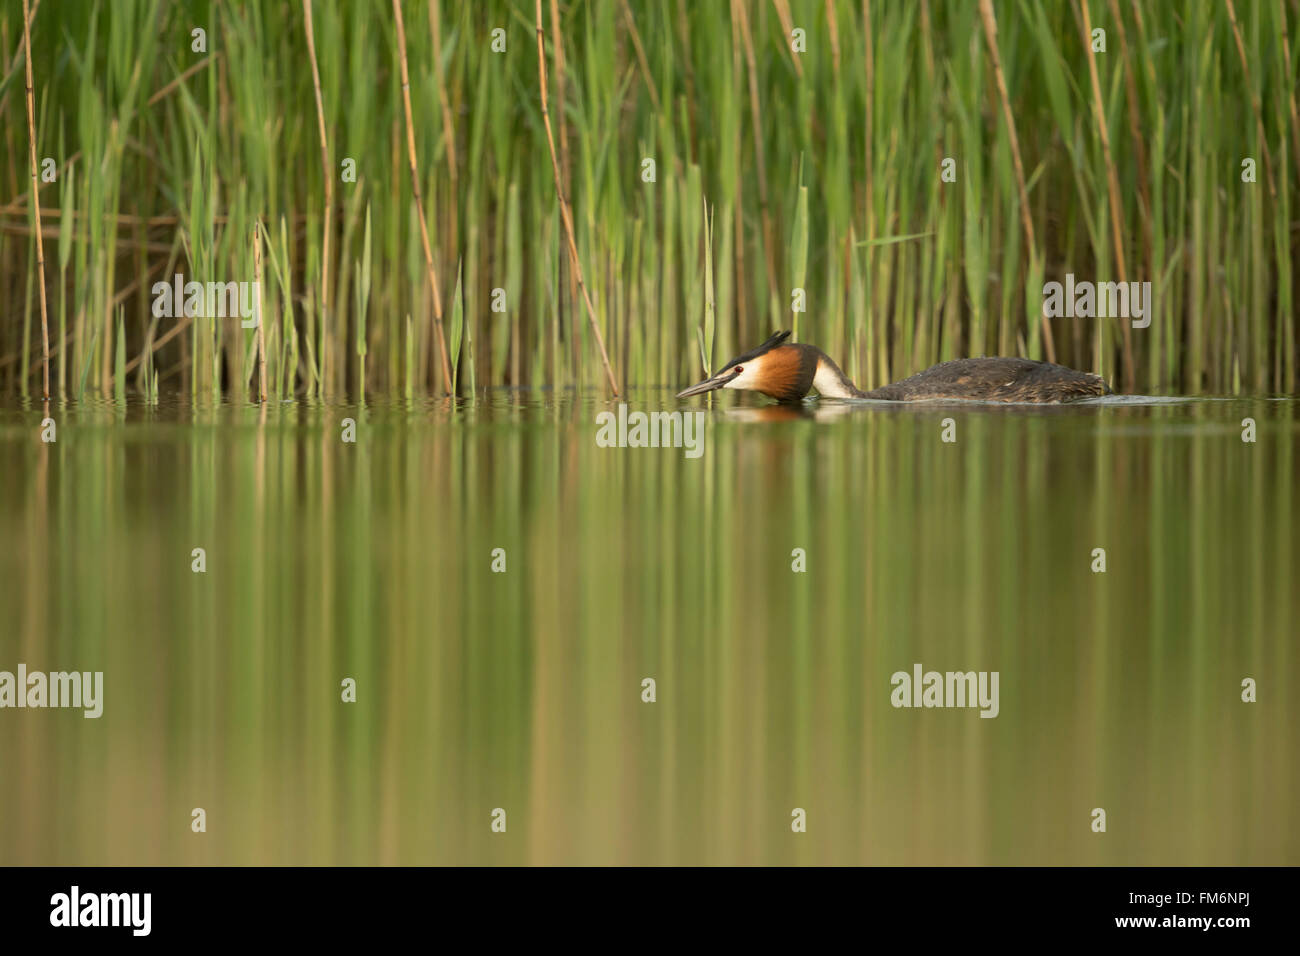 Grèbe huppé (Podiceps cristatus ) nage dans la posture tendue le long d'une ceinture de roseaux vert, l'eau calme, belle réflexion. Banque D'Images